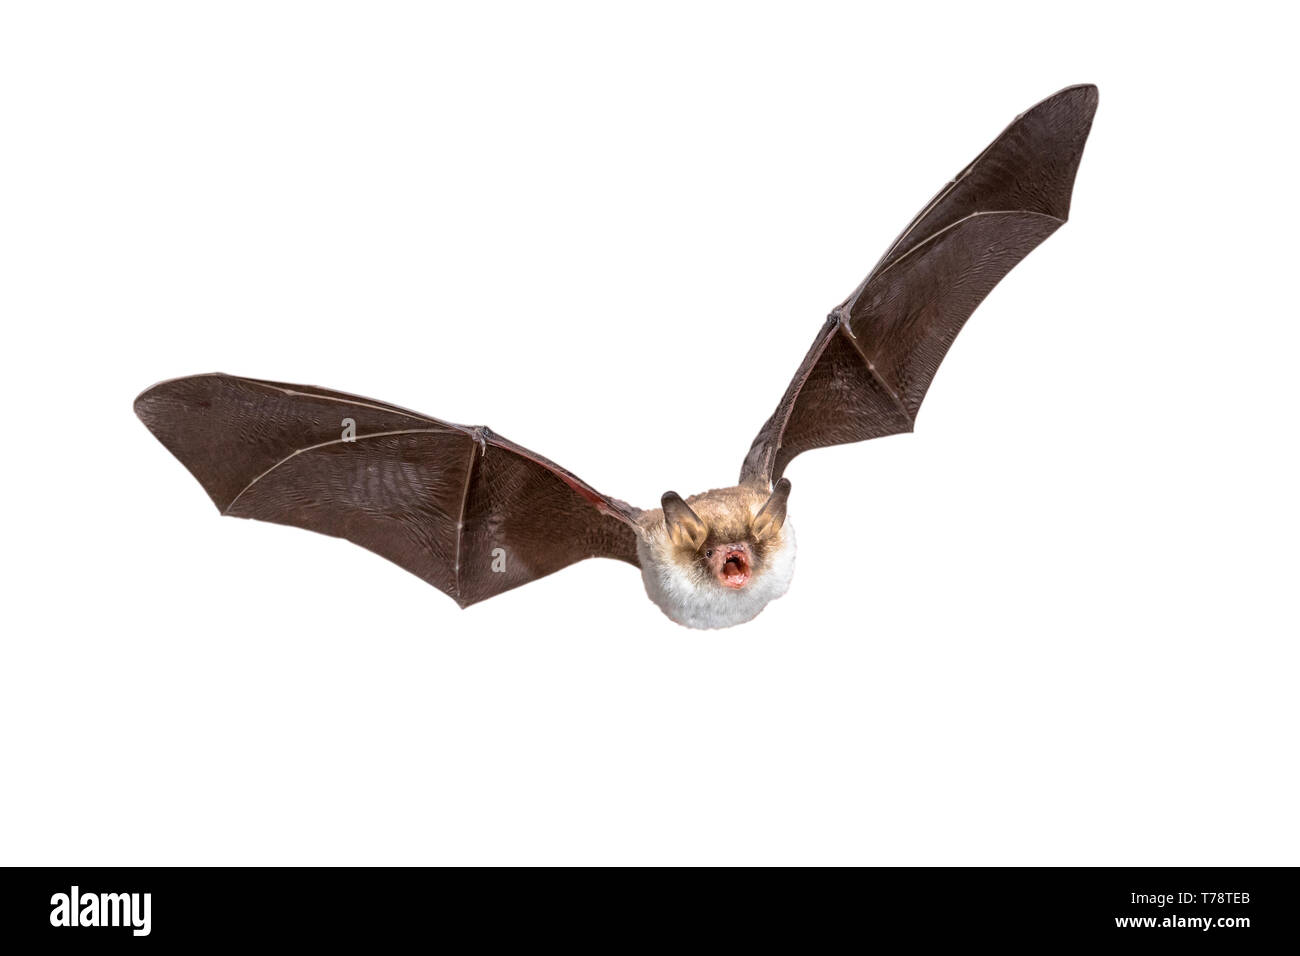 Flying Natterer bat (Myotis nattereri) Azione girato di caccia animale isolato su sfondo bianco. Questa specie è di medie dimensioni, notturna e insec Foto Stock